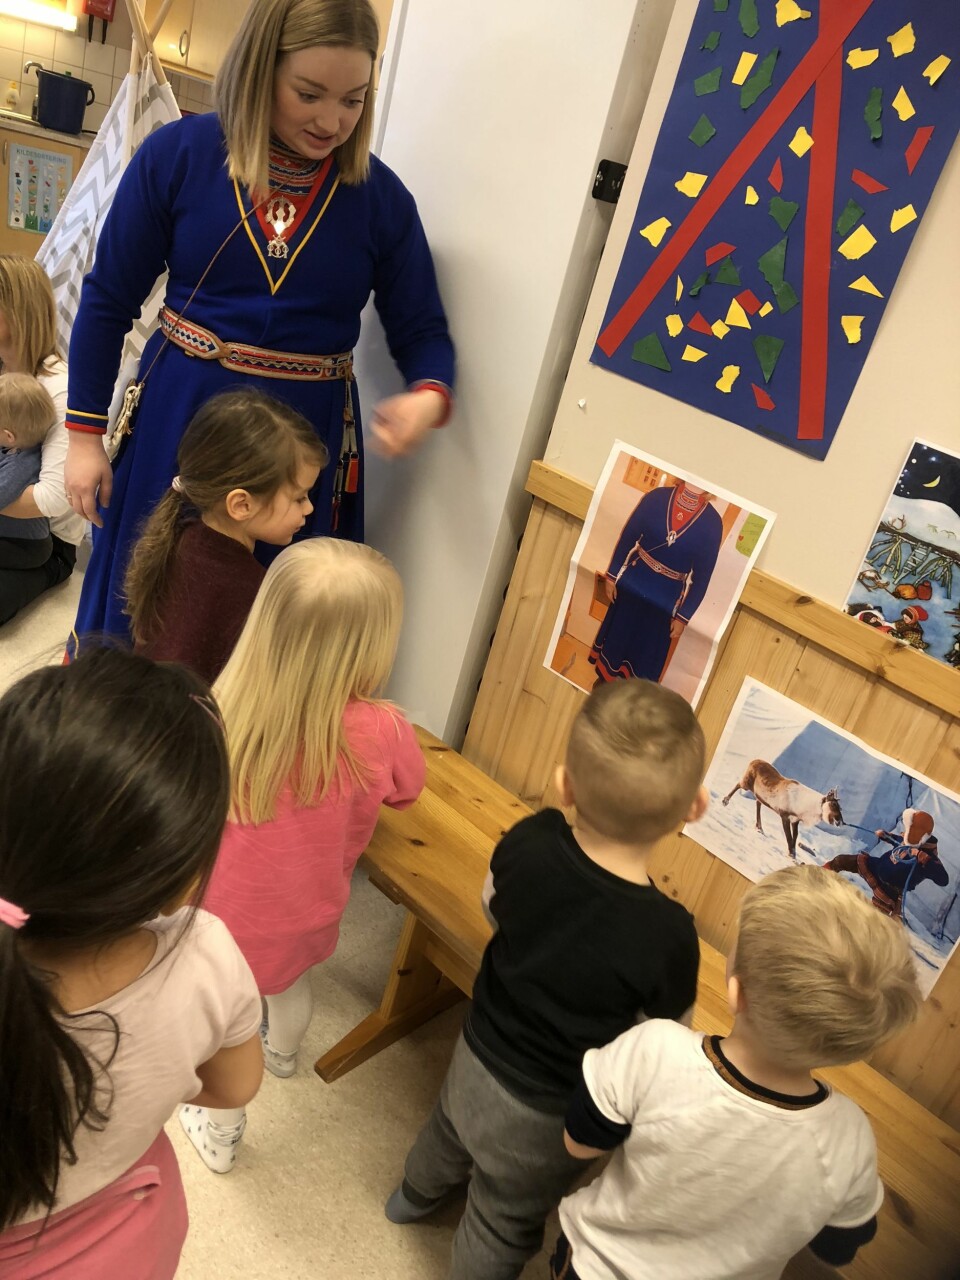 I Krinkelkroken barnehage feirer de samenes nasjonaldag hvert år. Her forteller Marthe Marie Kvitfjell barna om samisk kultur og tradisjon.